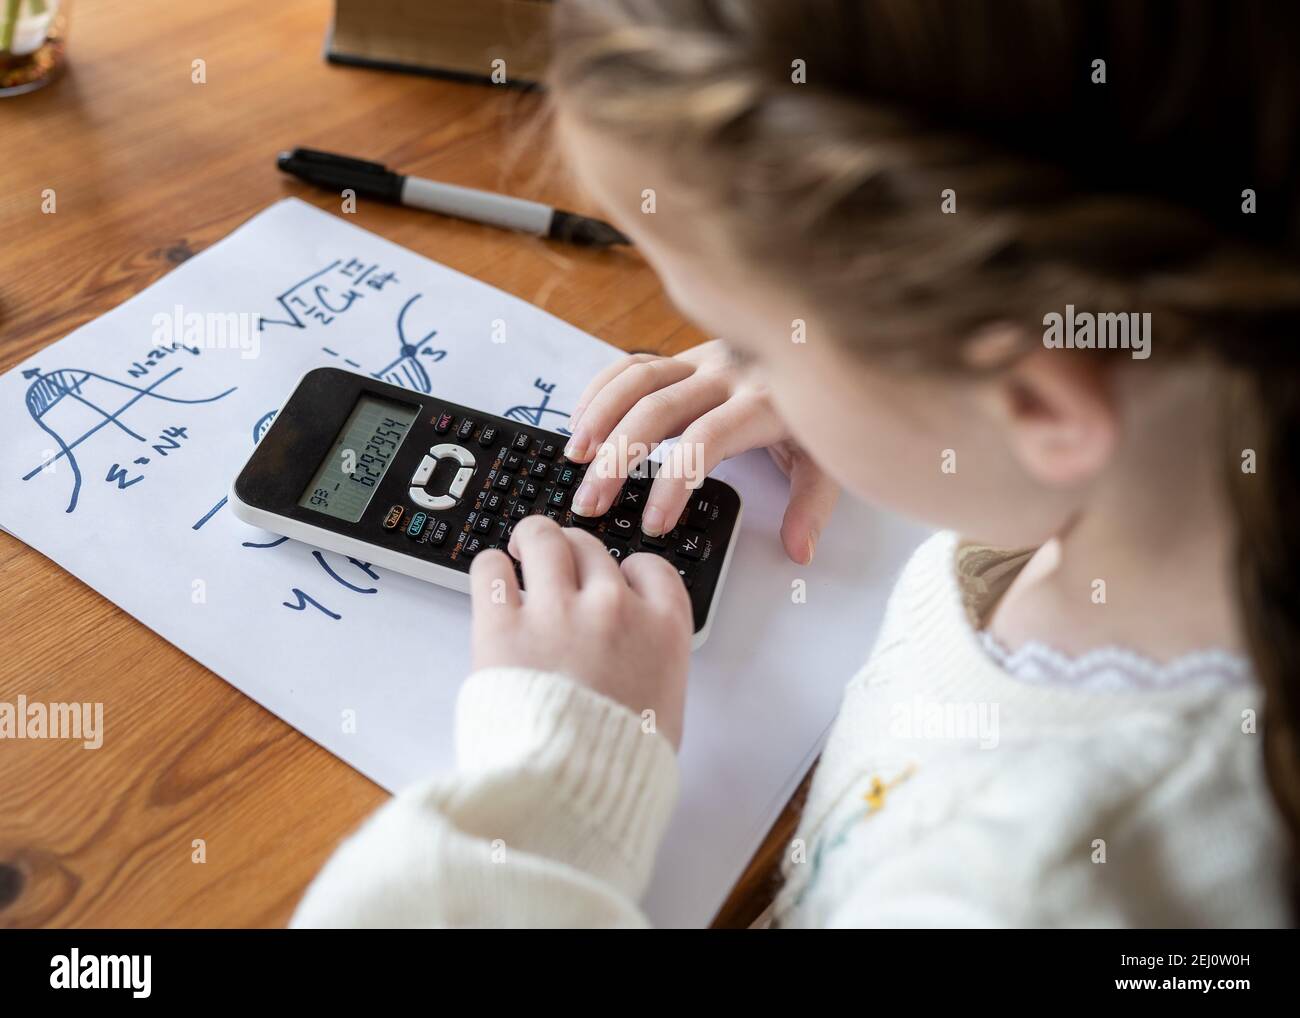 Carino giovane ragazza carina facendo calcoli complessi di scrittura matematica genio bambino a casa scuola utilizzando la calcolatrice scientifica per fare avanzate aritmetica Foto Stock